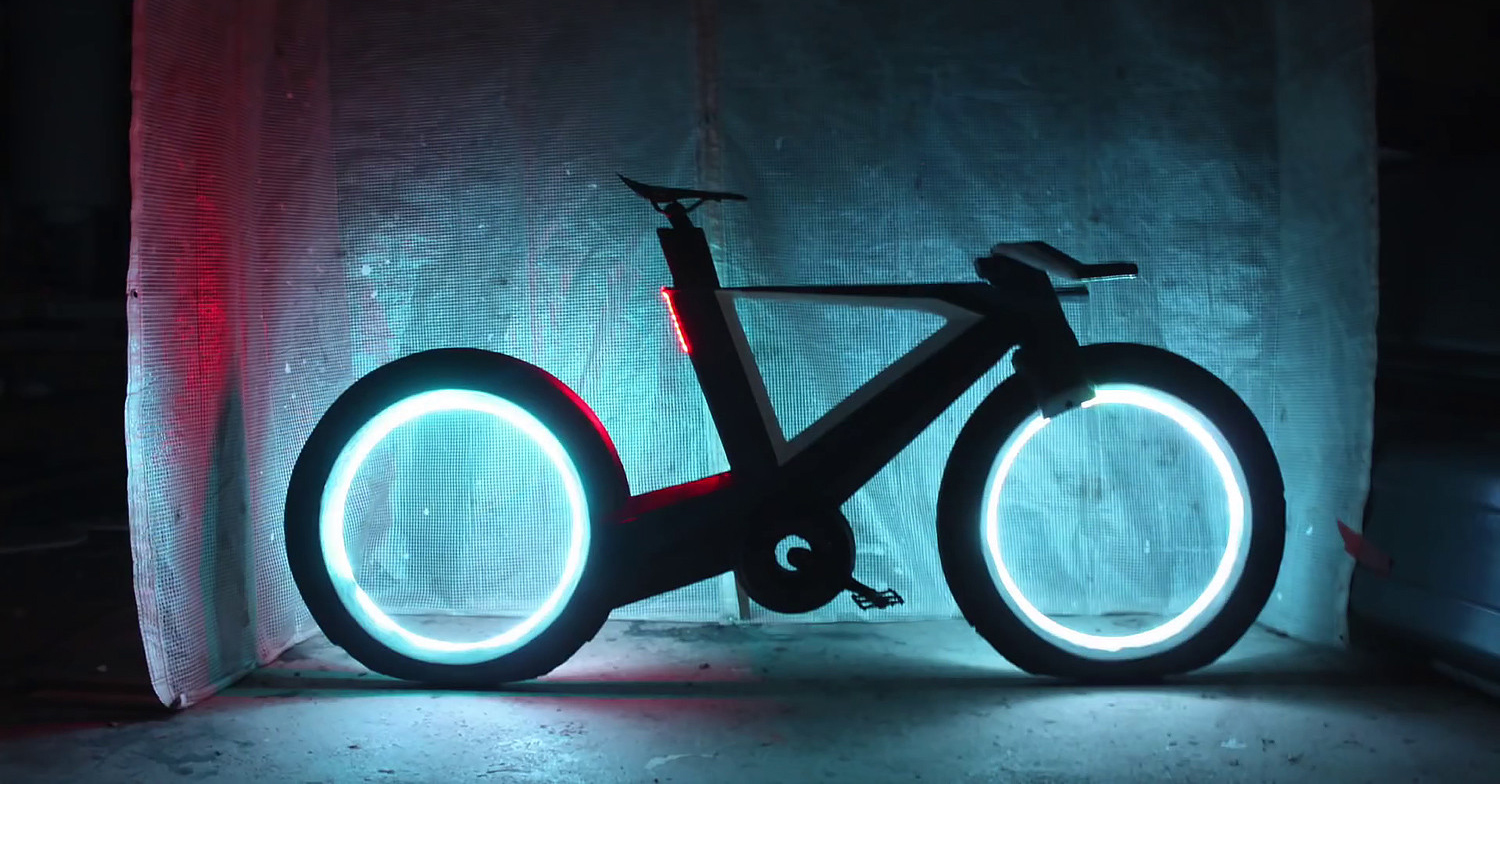 Se trata de una bicicleta eléctrica que con sus luces led hace más visible al conductor entre el tráfico en lugares poco iluminados